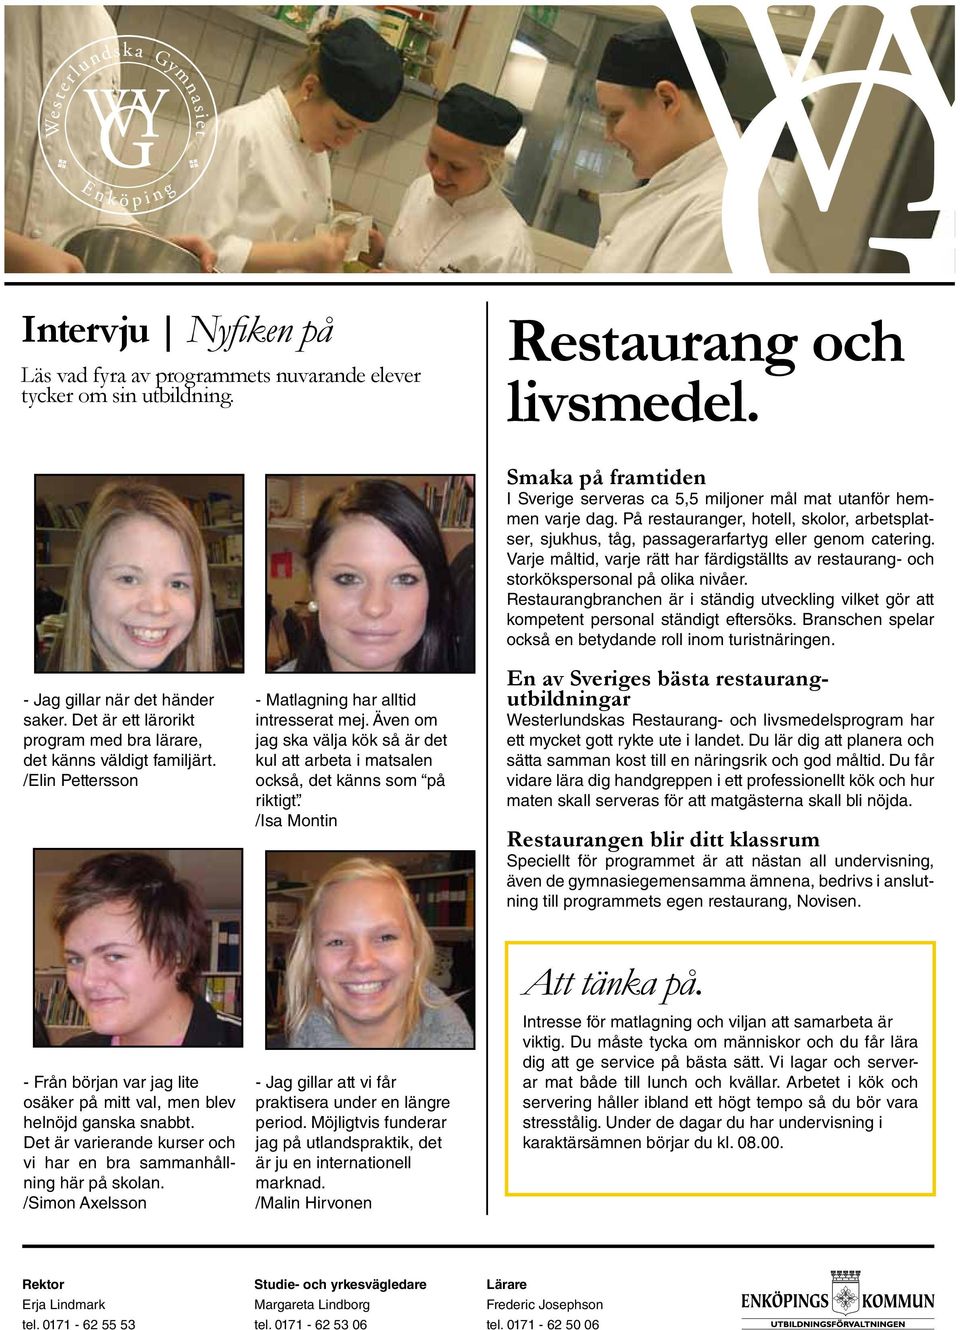 Även om jag ska välja kök så är det kul att arbeta i matsalen också, det känns som på riktigt. /Isa Montin Smaka på framtiden I Sverige serveras ca 5,5 miljoner mål mat utanför hemmen varje dag.